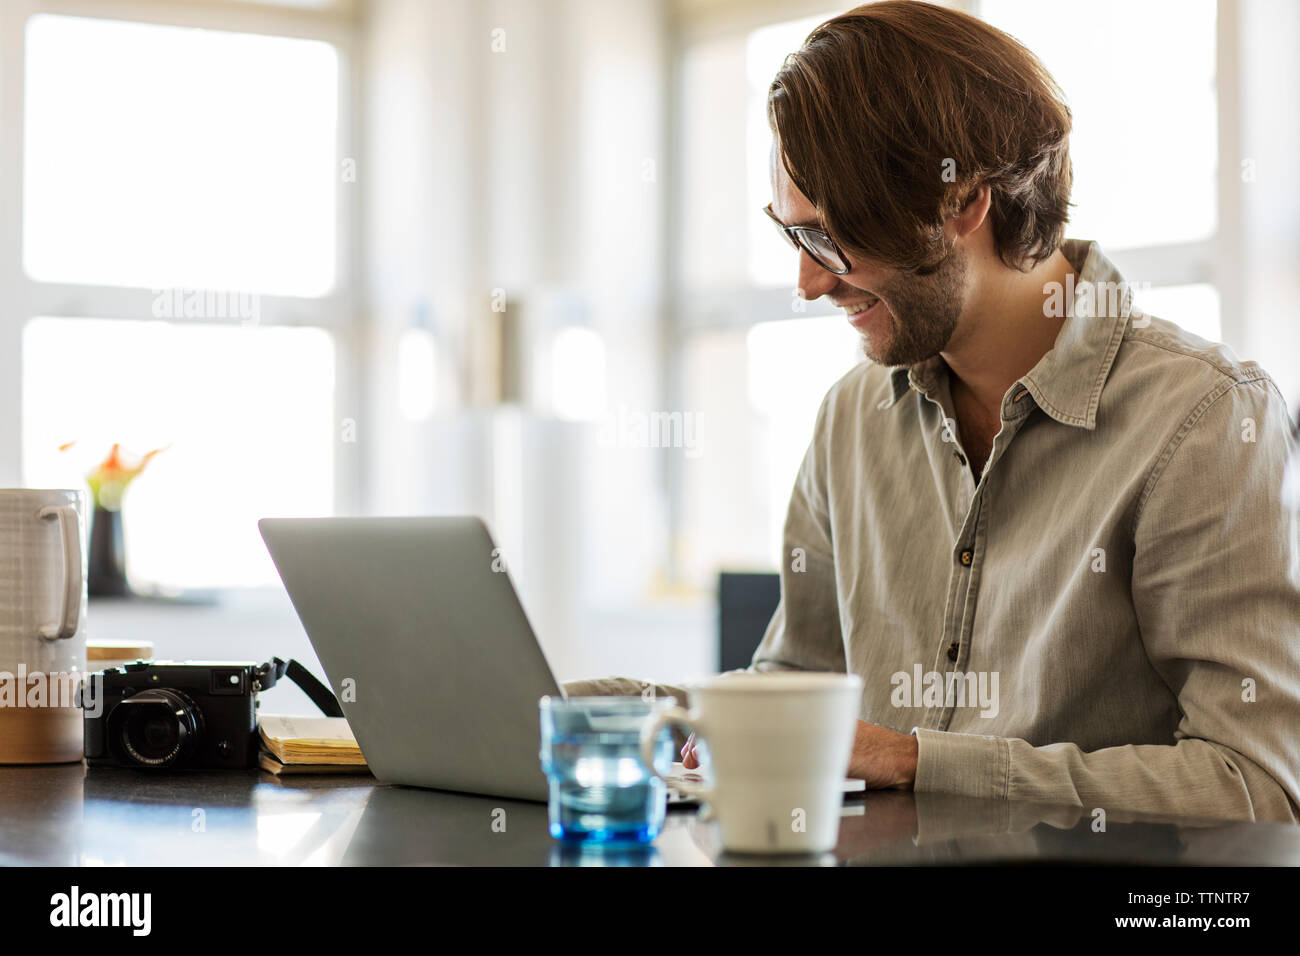 Smiling man using laptop computer sur l'île de cuisine à la maison Banque D'Images